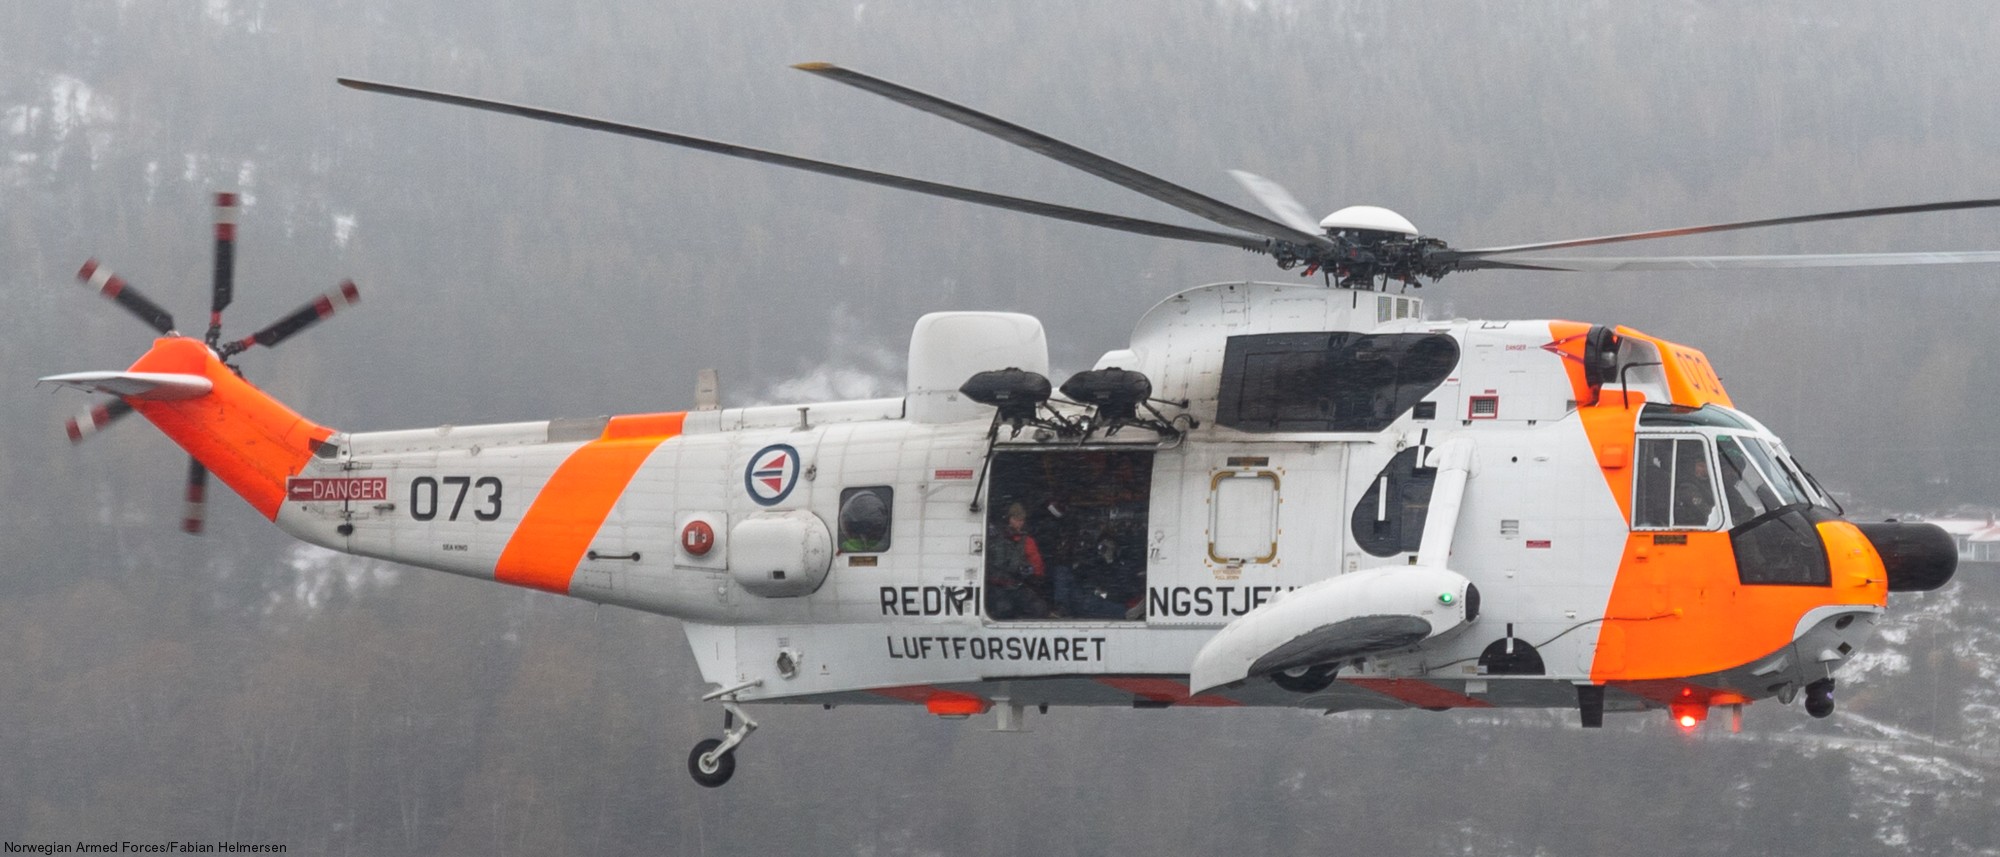 westland ws-61 sea king royal norwegian air force sar rescue 330 squadron skvadron luftforsvaret 073 08